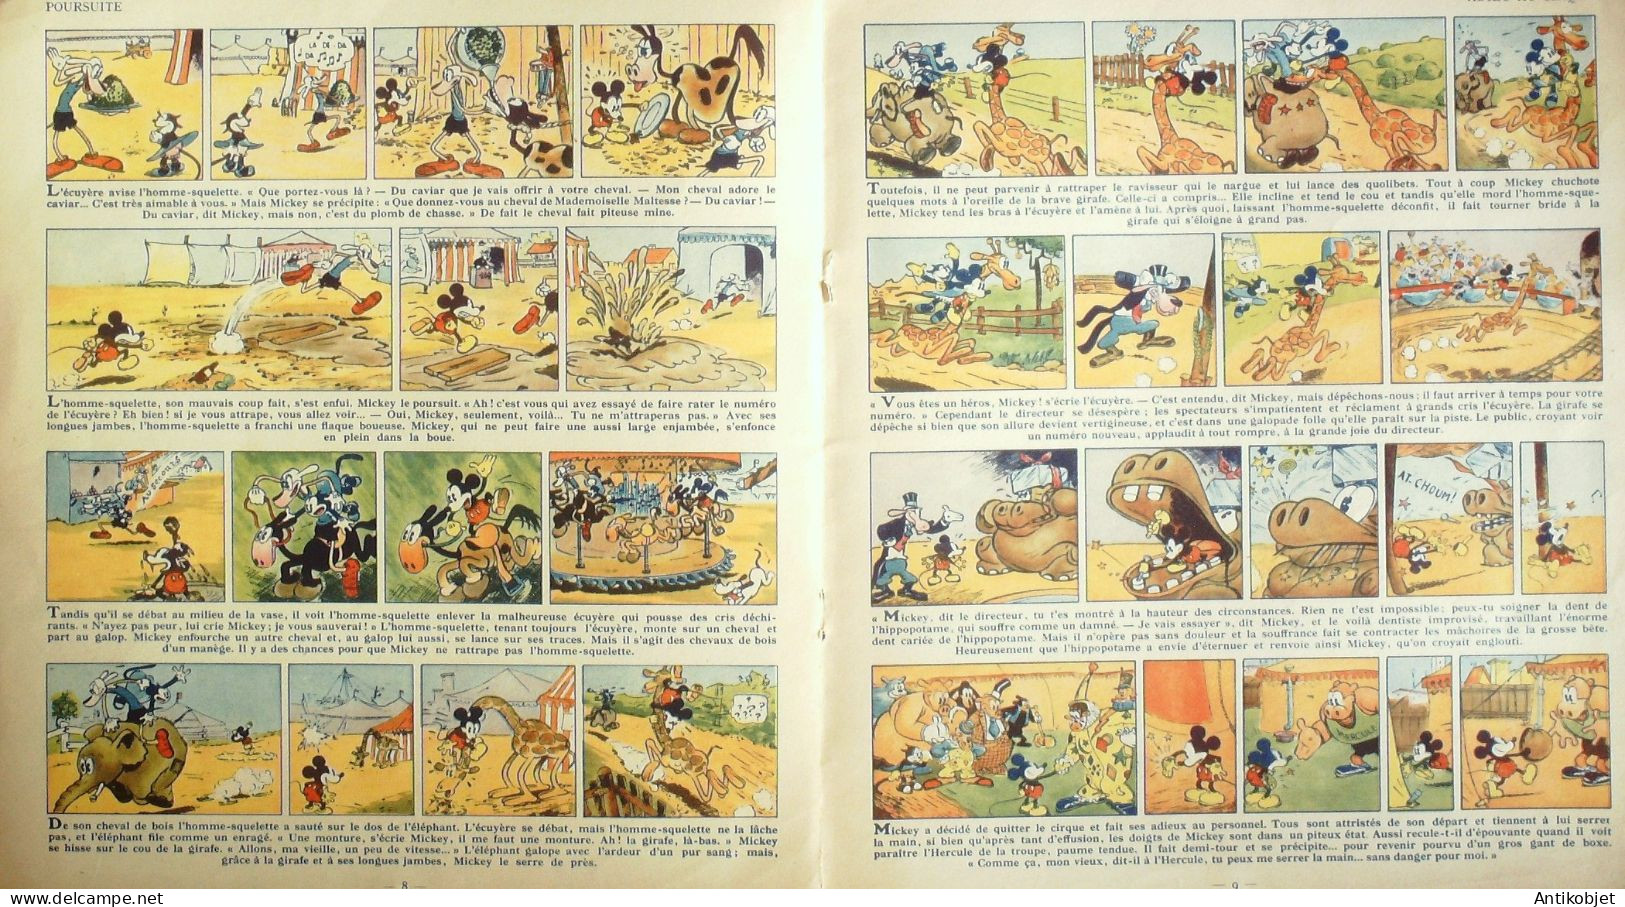 Mickey Dompteur Illustré Par Walt Disney édition Hachette Eo 1936 - 1901-1940